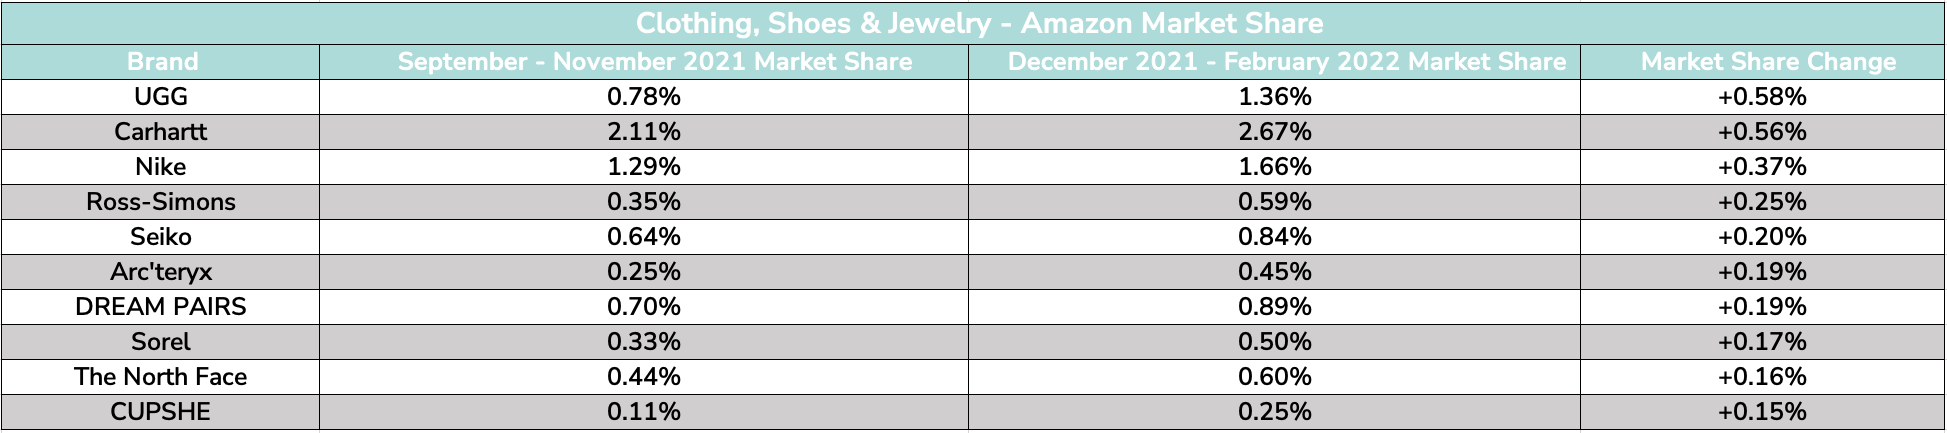 Clothing, Shoes & Jewelry- Amazon Market Share